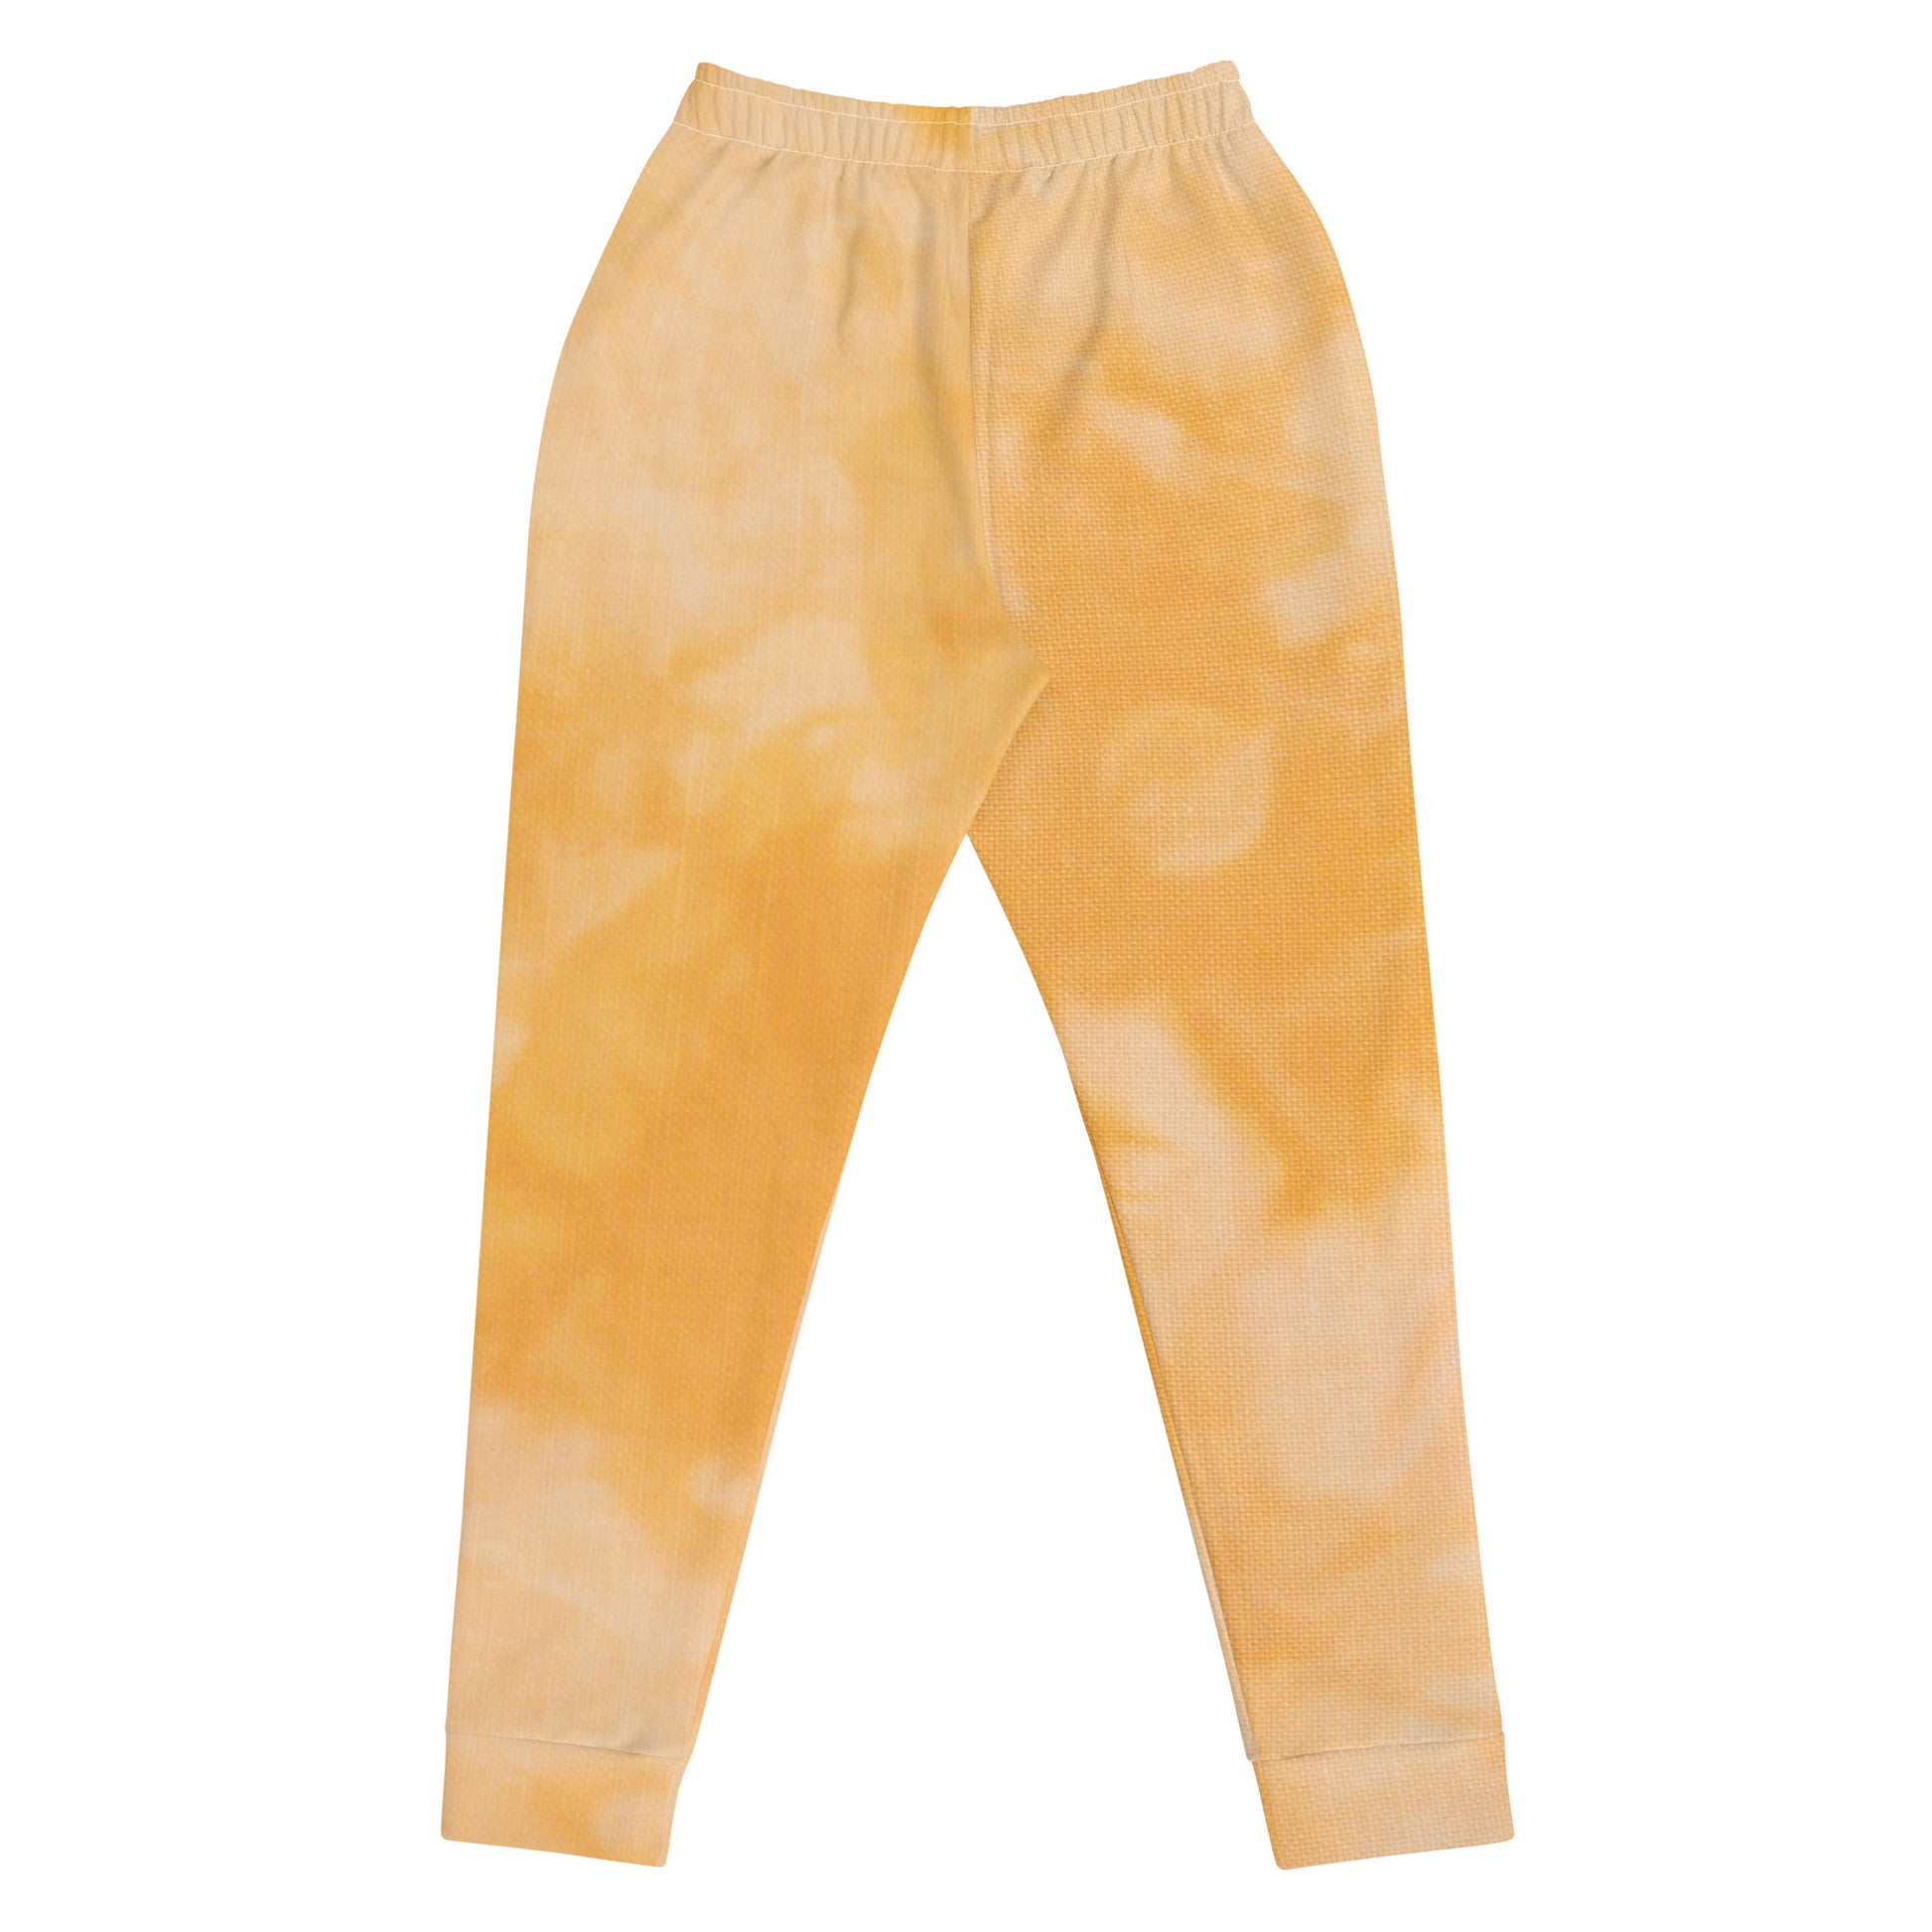 Humble Sportswear™, women's slim fit yellow tie-dyed fleece joggers 